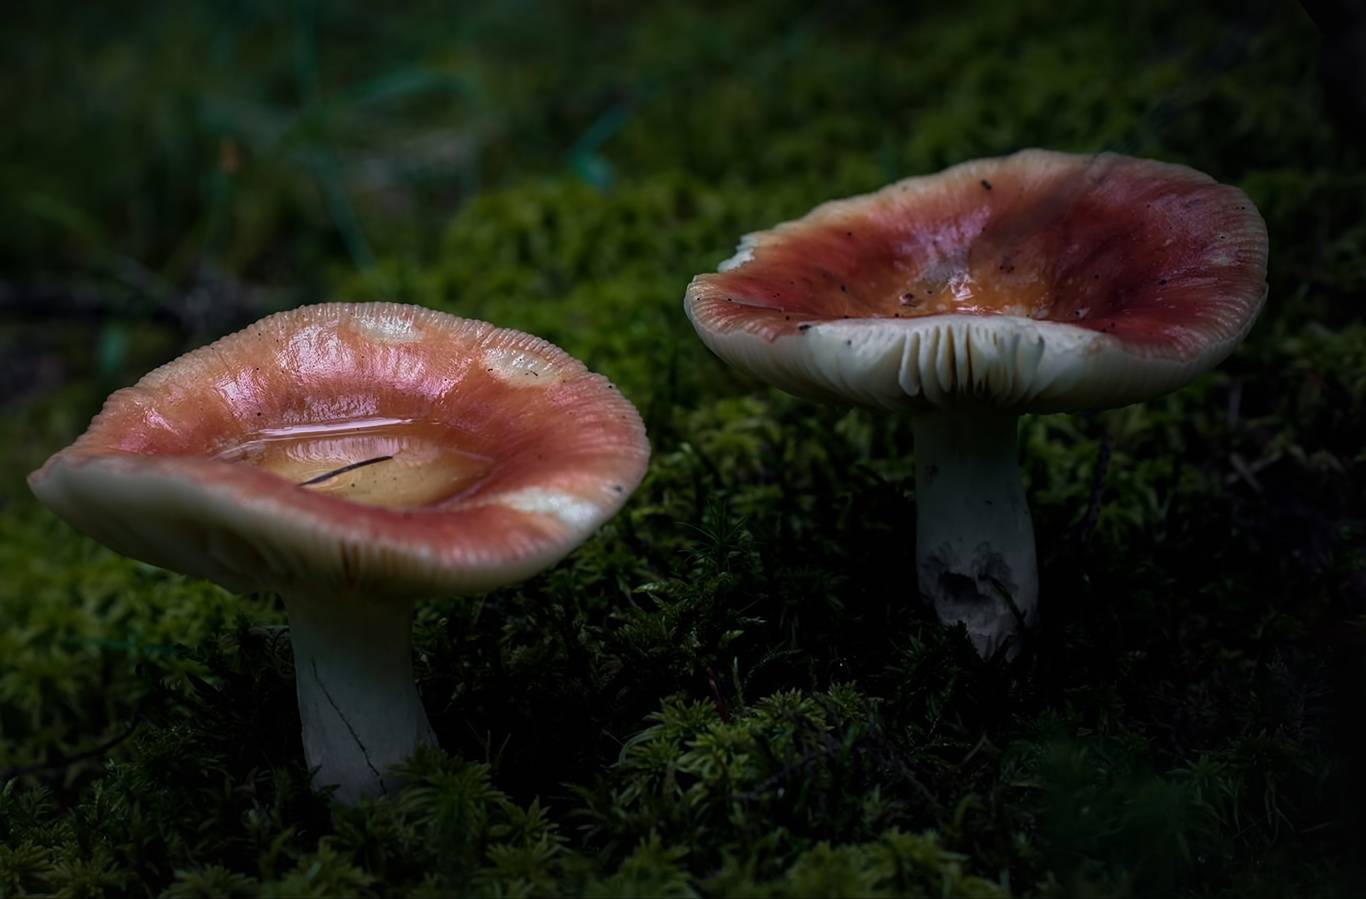 Сыроежки: фото съедобных и несъедобных грибов, как отличить, описание